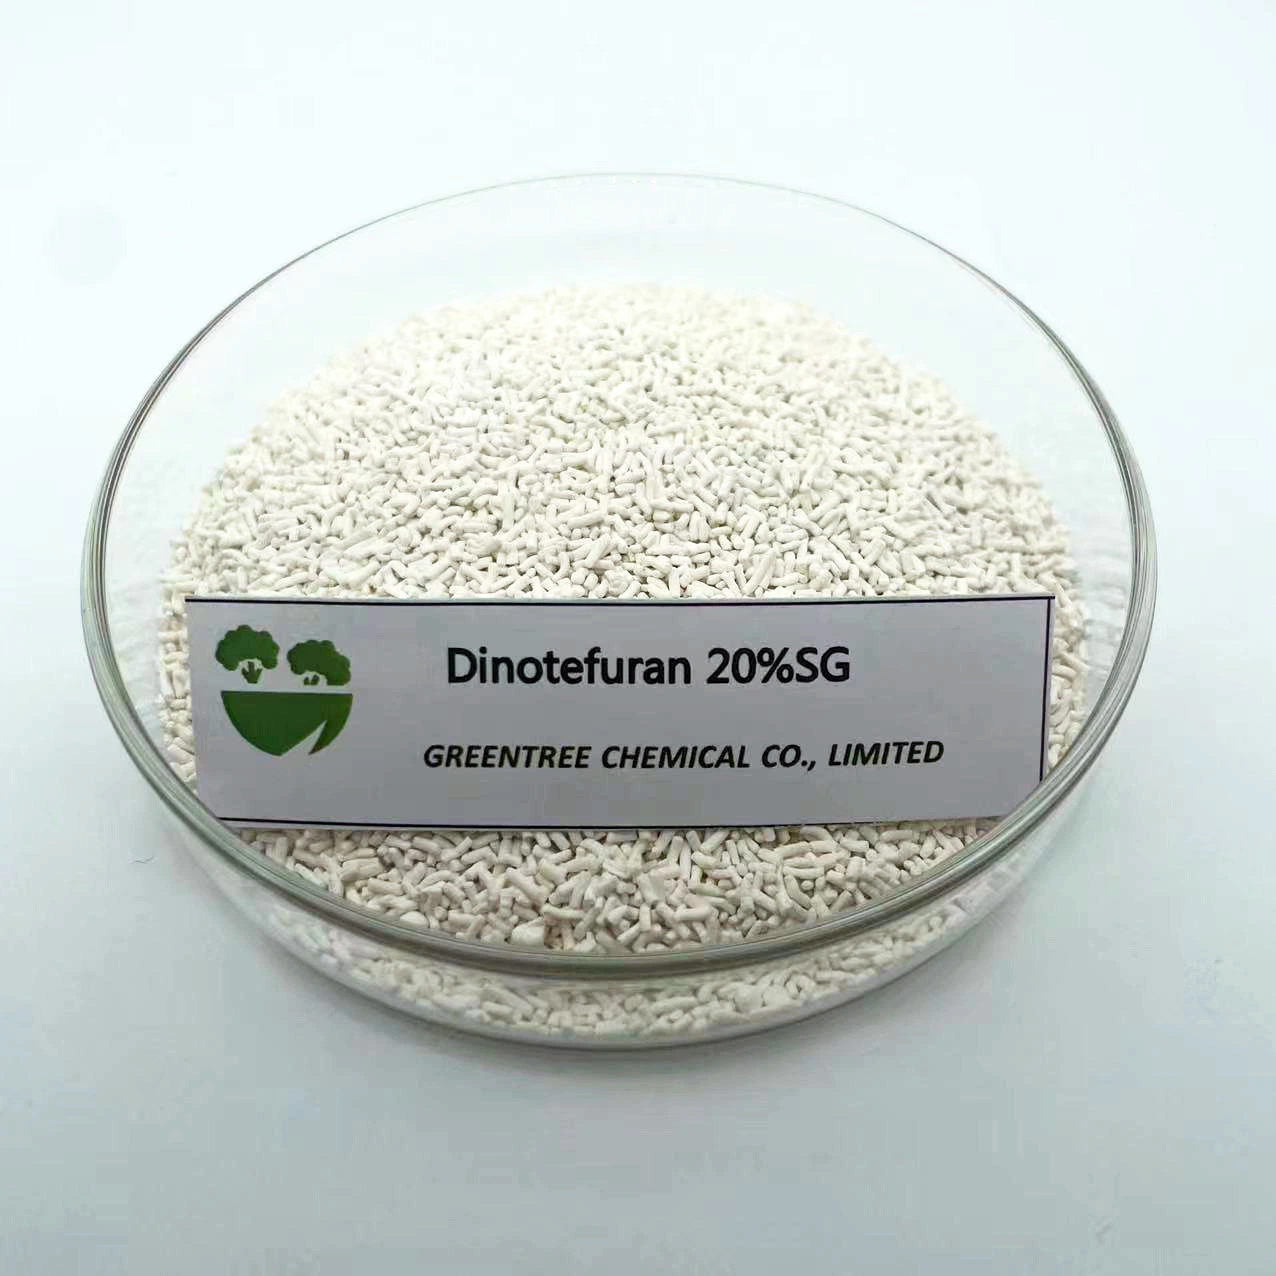 Pestizid Dinotefuran CAS: 165252-70-0 ist ein Neonikotinoid Insektizid 20% SG